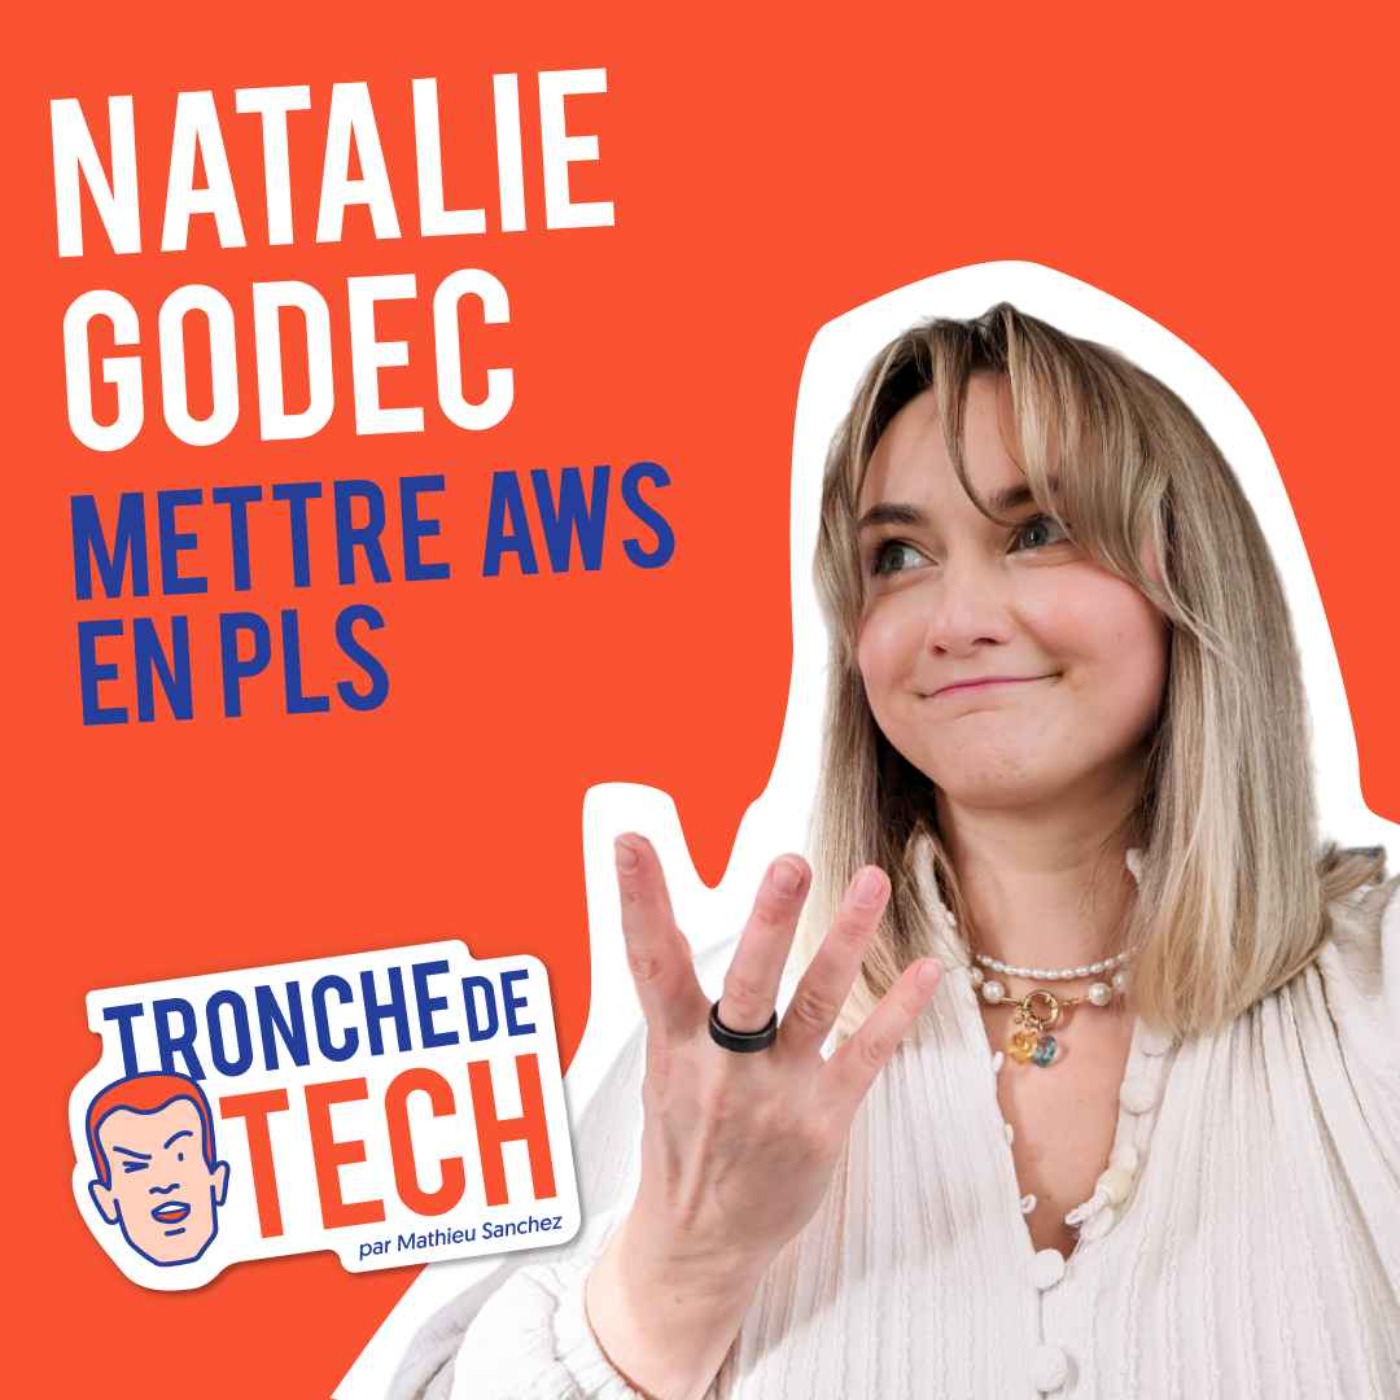 cover art for #18 - Natalie Godec - Mettre AWS en PLS